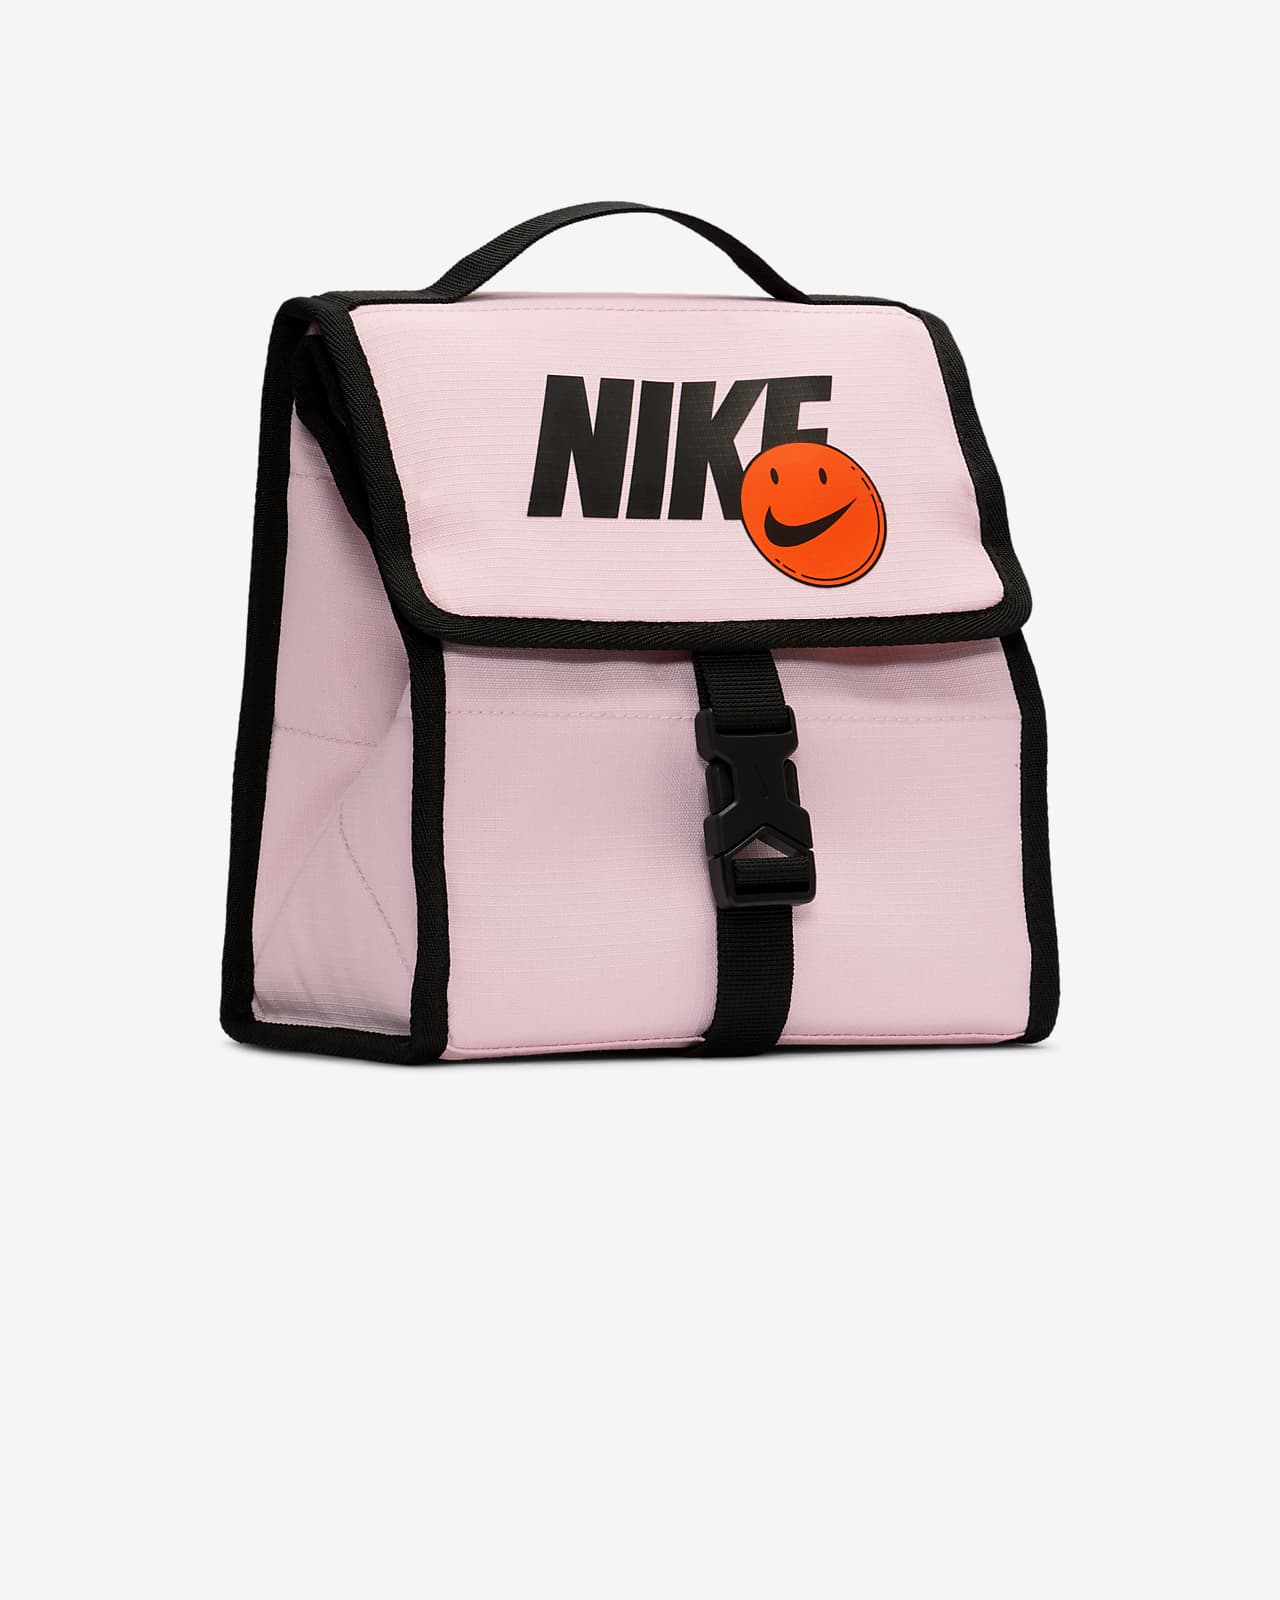 Nike Lunch Duffel Bag